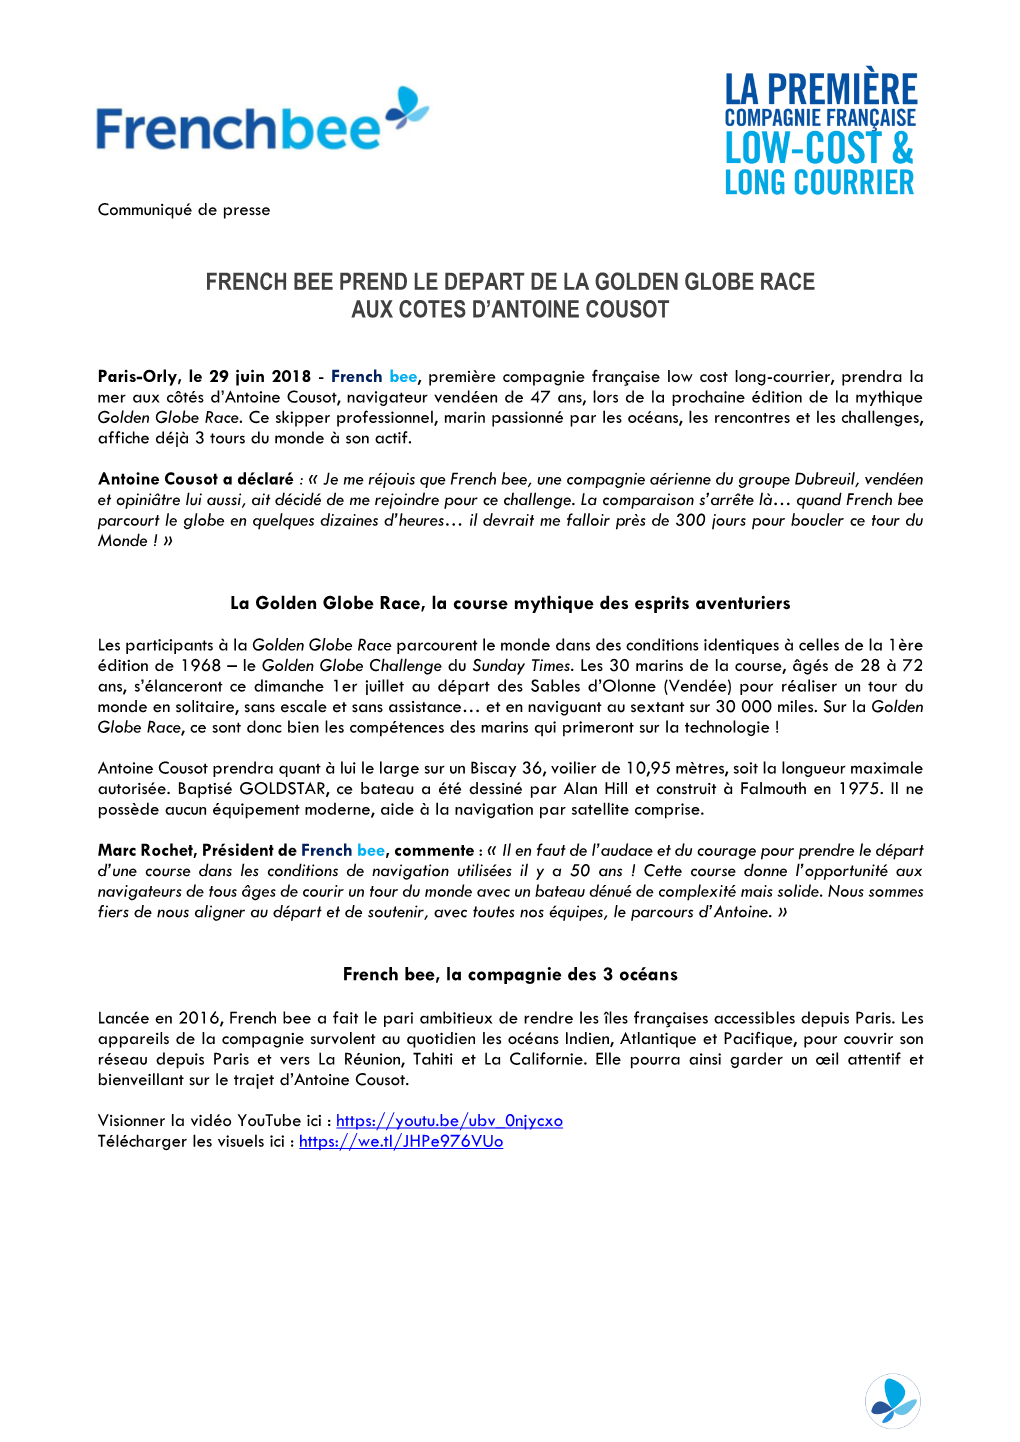 French Bee Prend Le Depart De La Golden Globe Race Aux Cotes D’Antoine Cousot